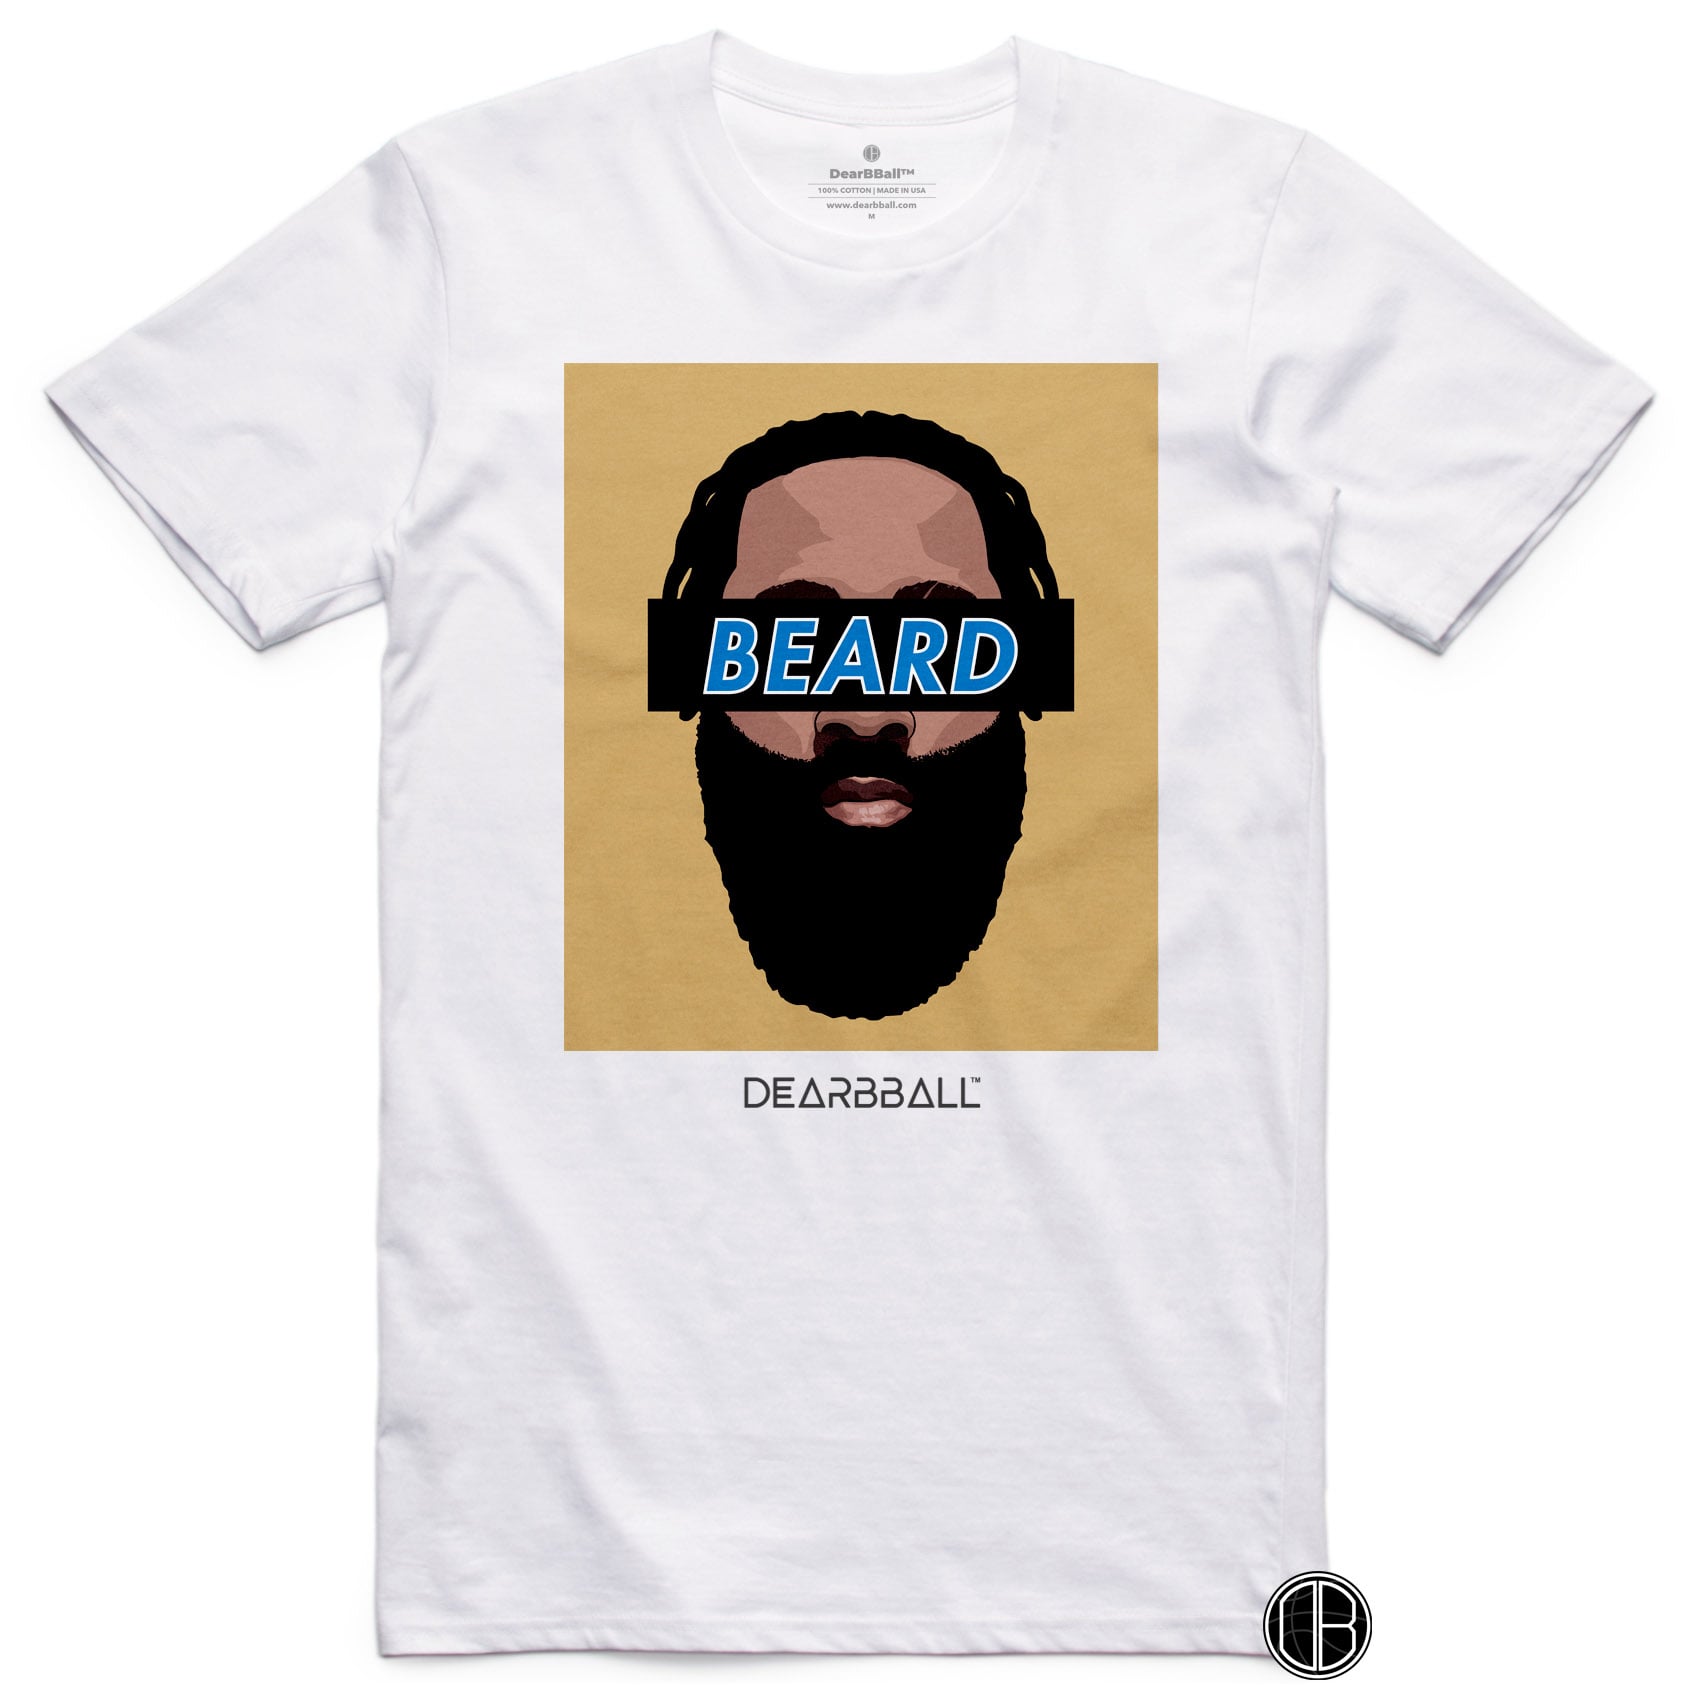 DearBBall T-Shirt - BEARD Gold Edition - DearBBall™